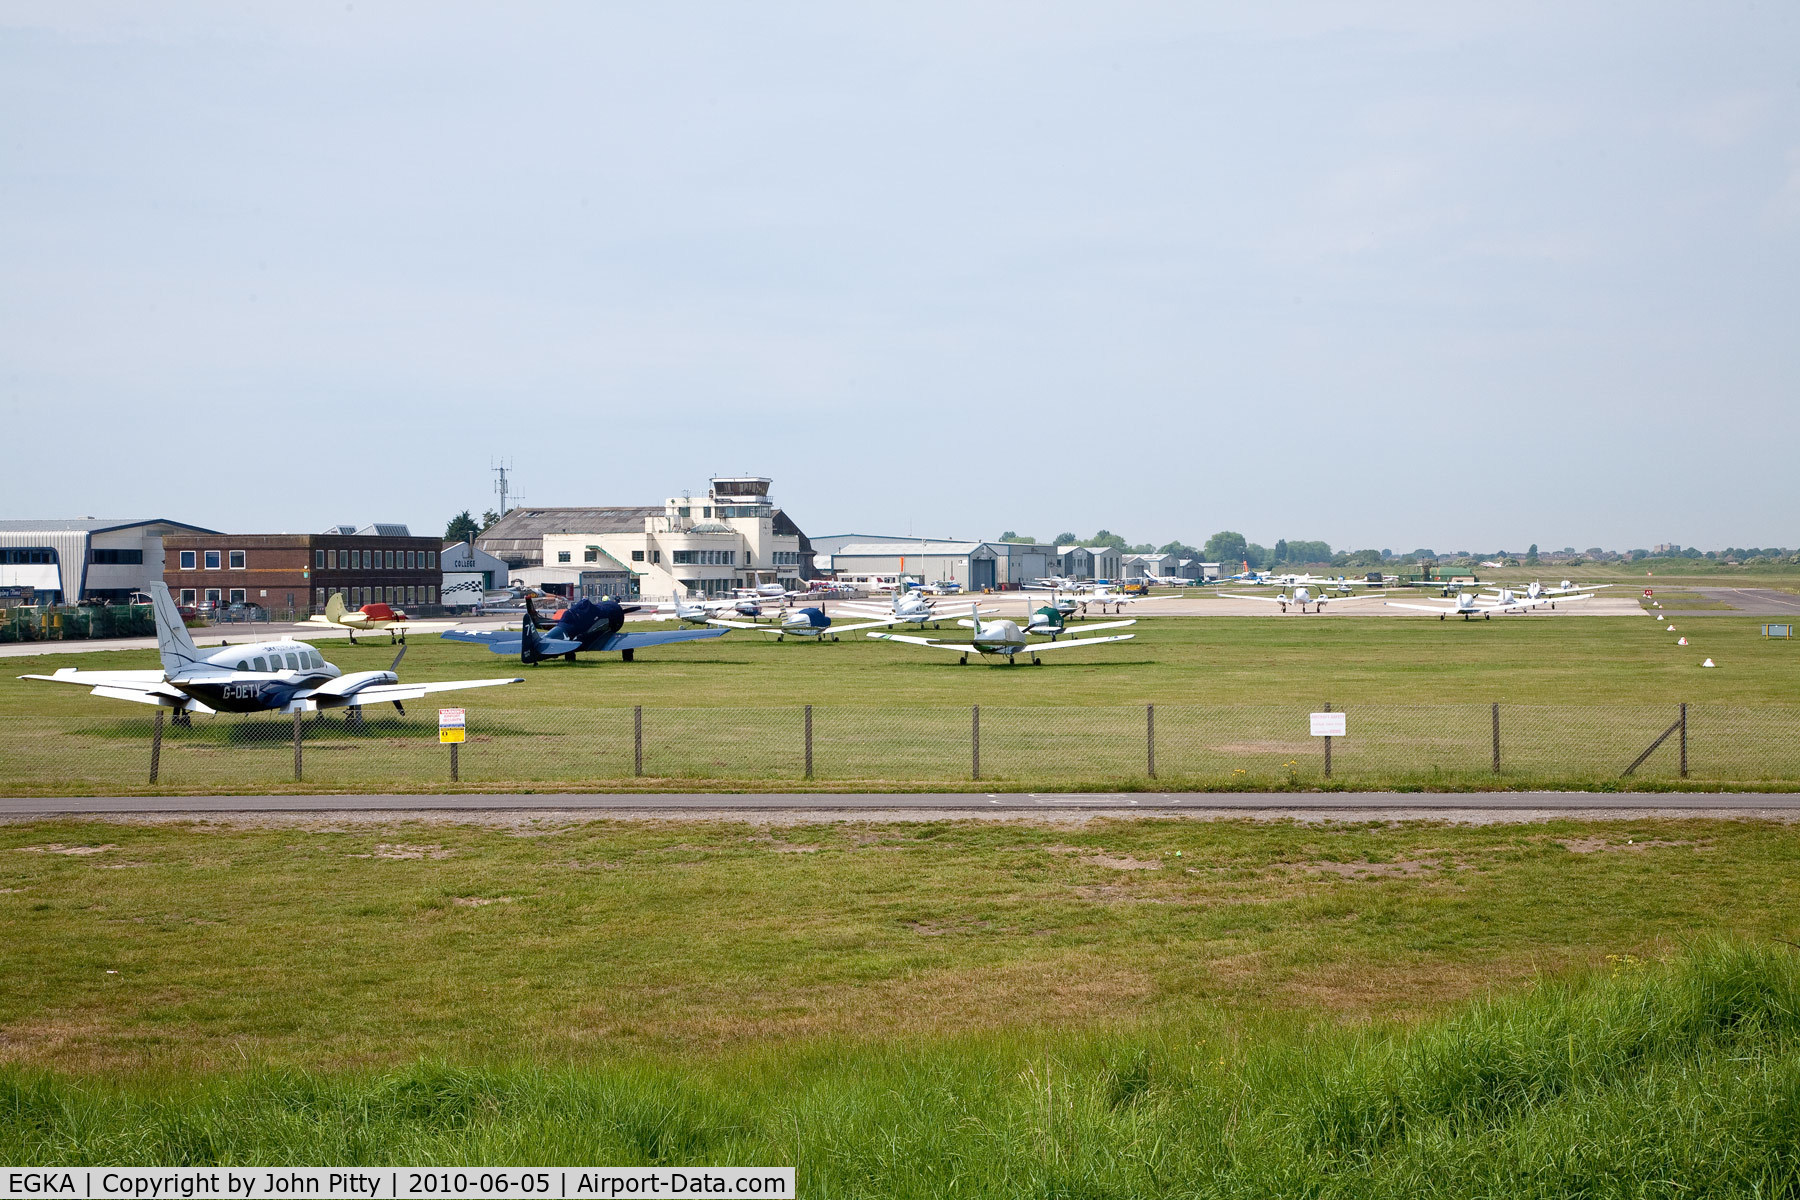 Shoreham Airport, Shoreham United Kingdom (EGKA) - Shoreham Airport, West Sussex, UK